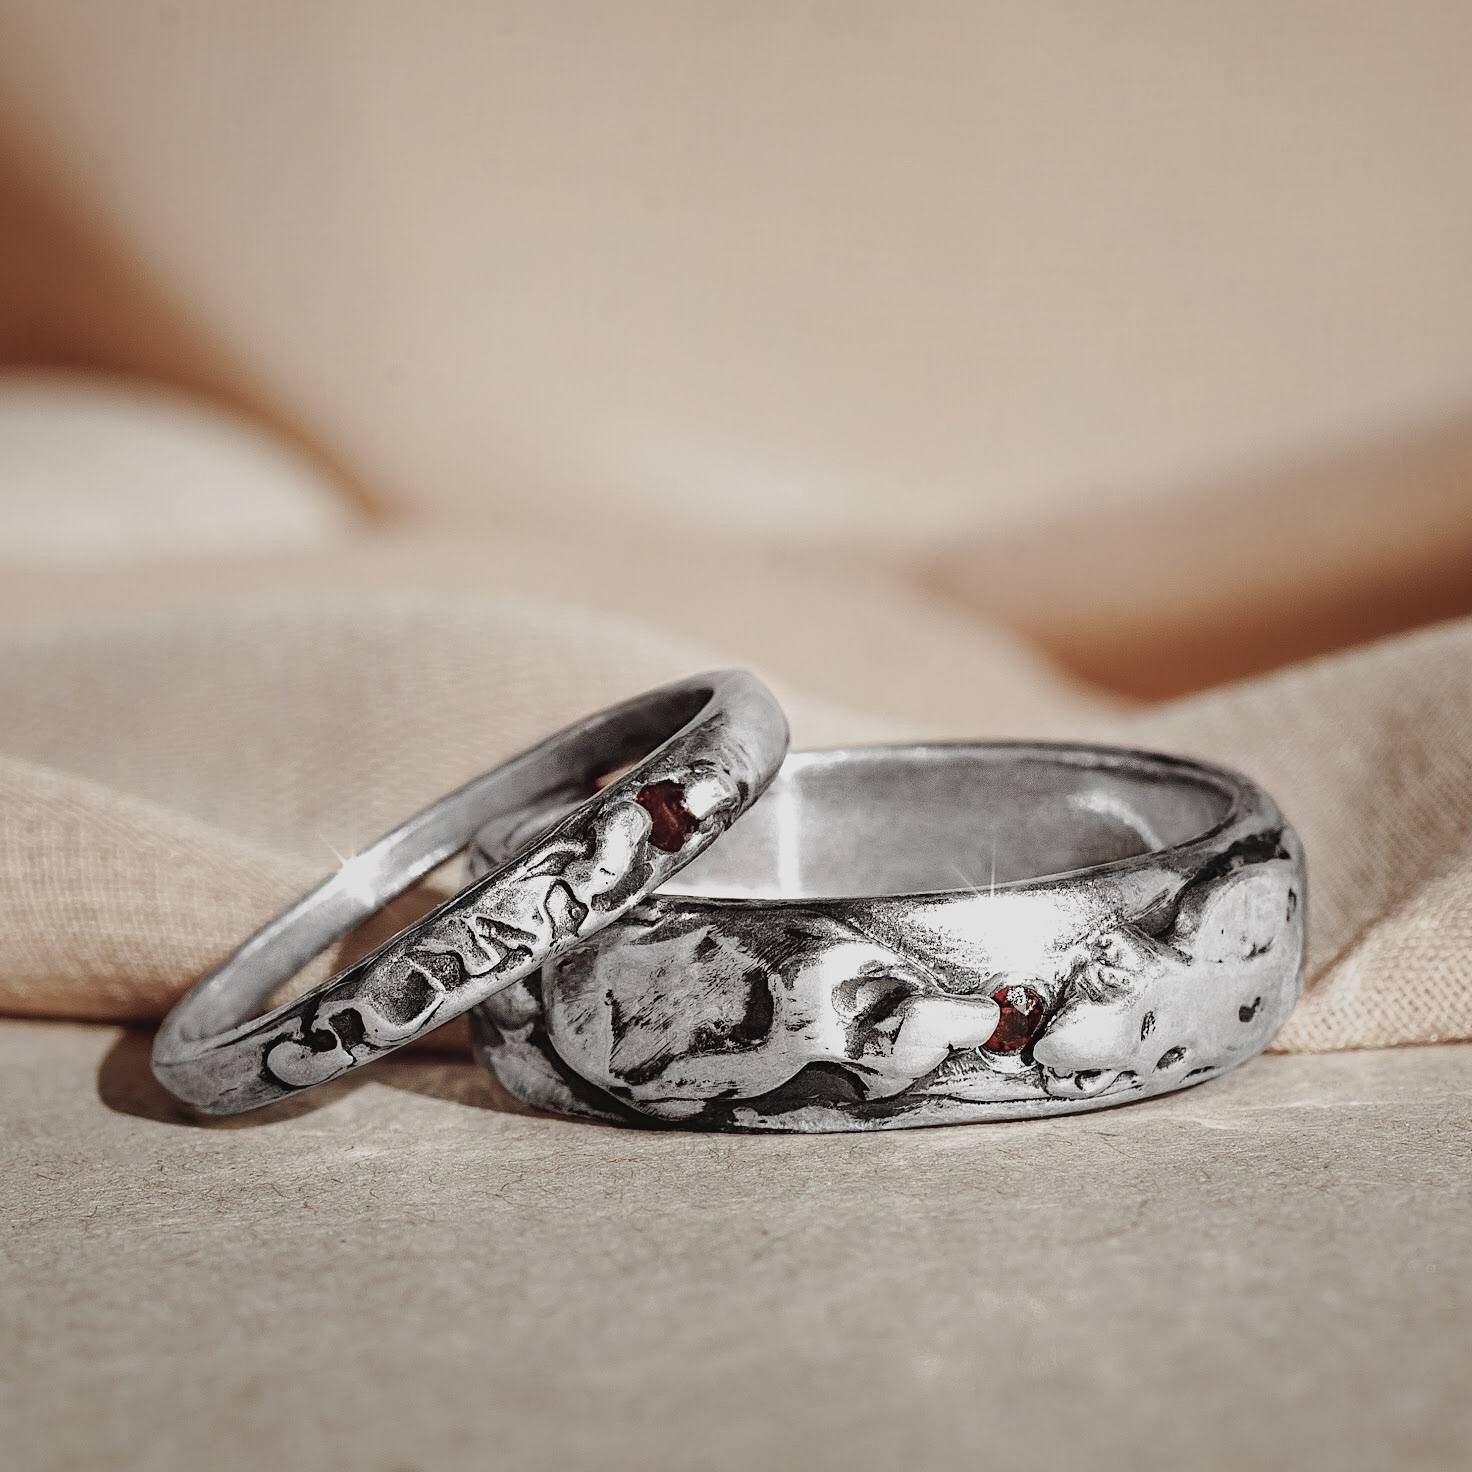 Можно обручальное кольцо серебряное. SEREBRO 925 Kolca обручальные. Оригинальные обручальные кольца. Серебряное обручальное кольцо. Необычные обручальные кольца.